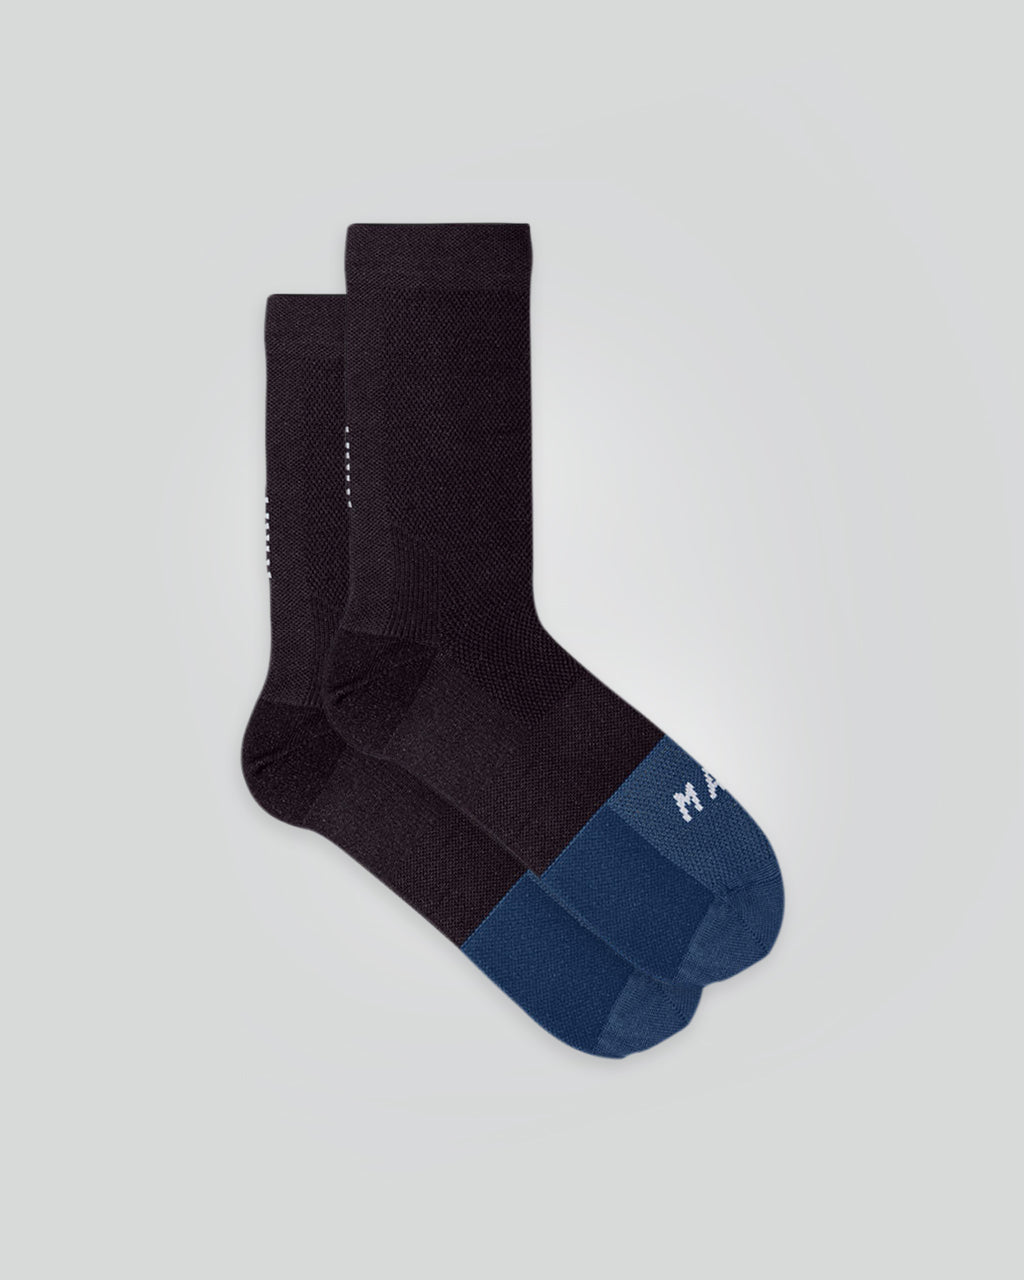 Division Sock